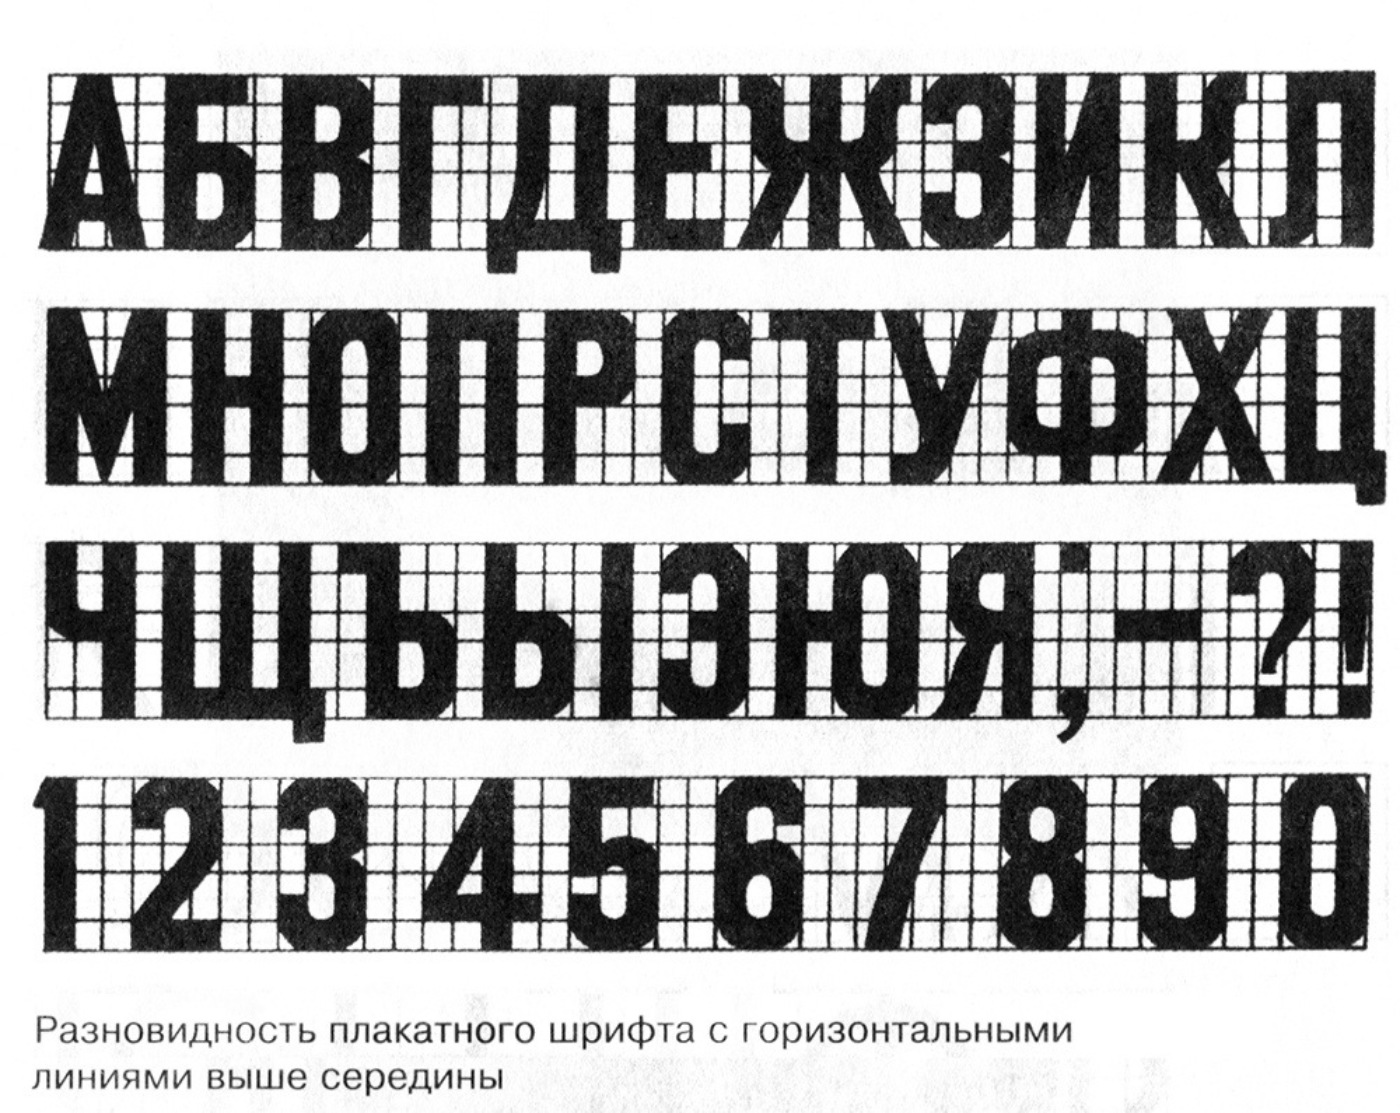 2 класса шрифтов. Рубленный шрифт. Печатный шрифт. Плакатный шрифт. Плакатные шрифты русские.